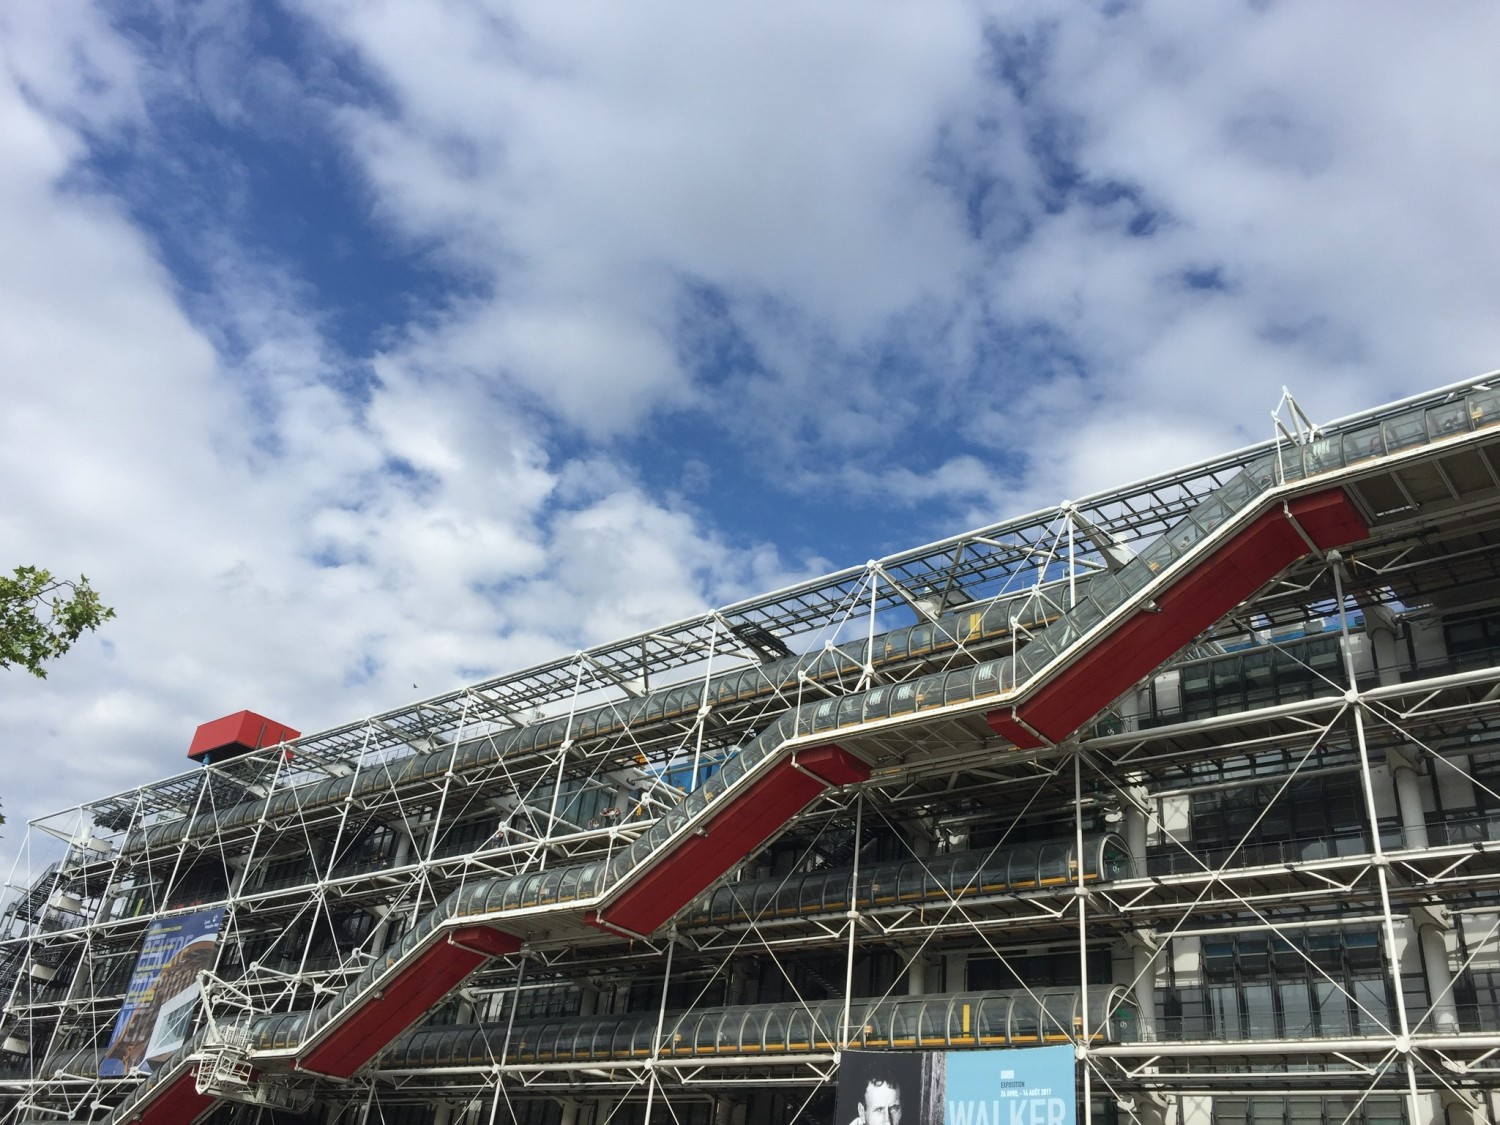 Pompidou-centeret for kunst og kultur er en kunstinstitution og et berømt bygningsværk i Paris